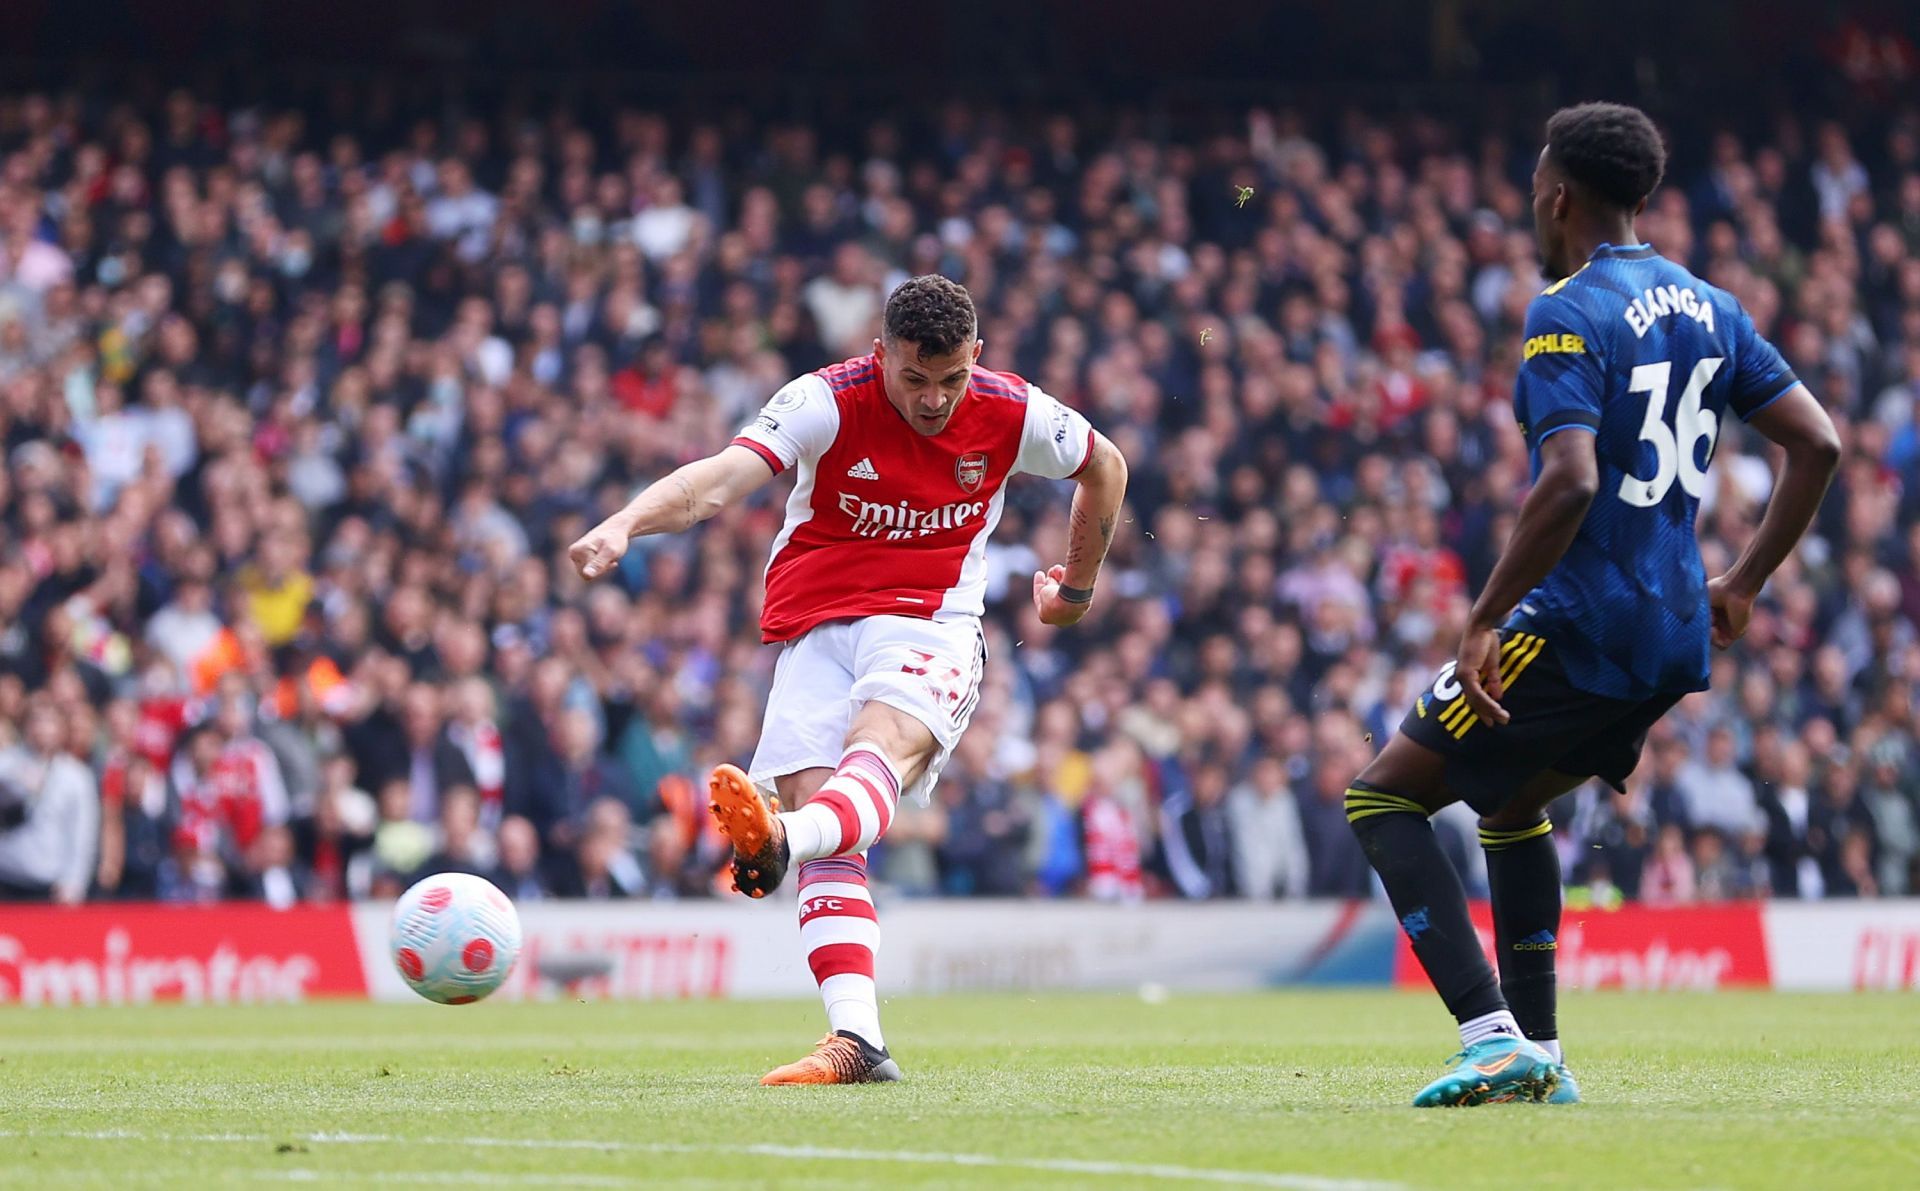 Granit Xhaka scored a screamer for Arsenal against Manchester United.